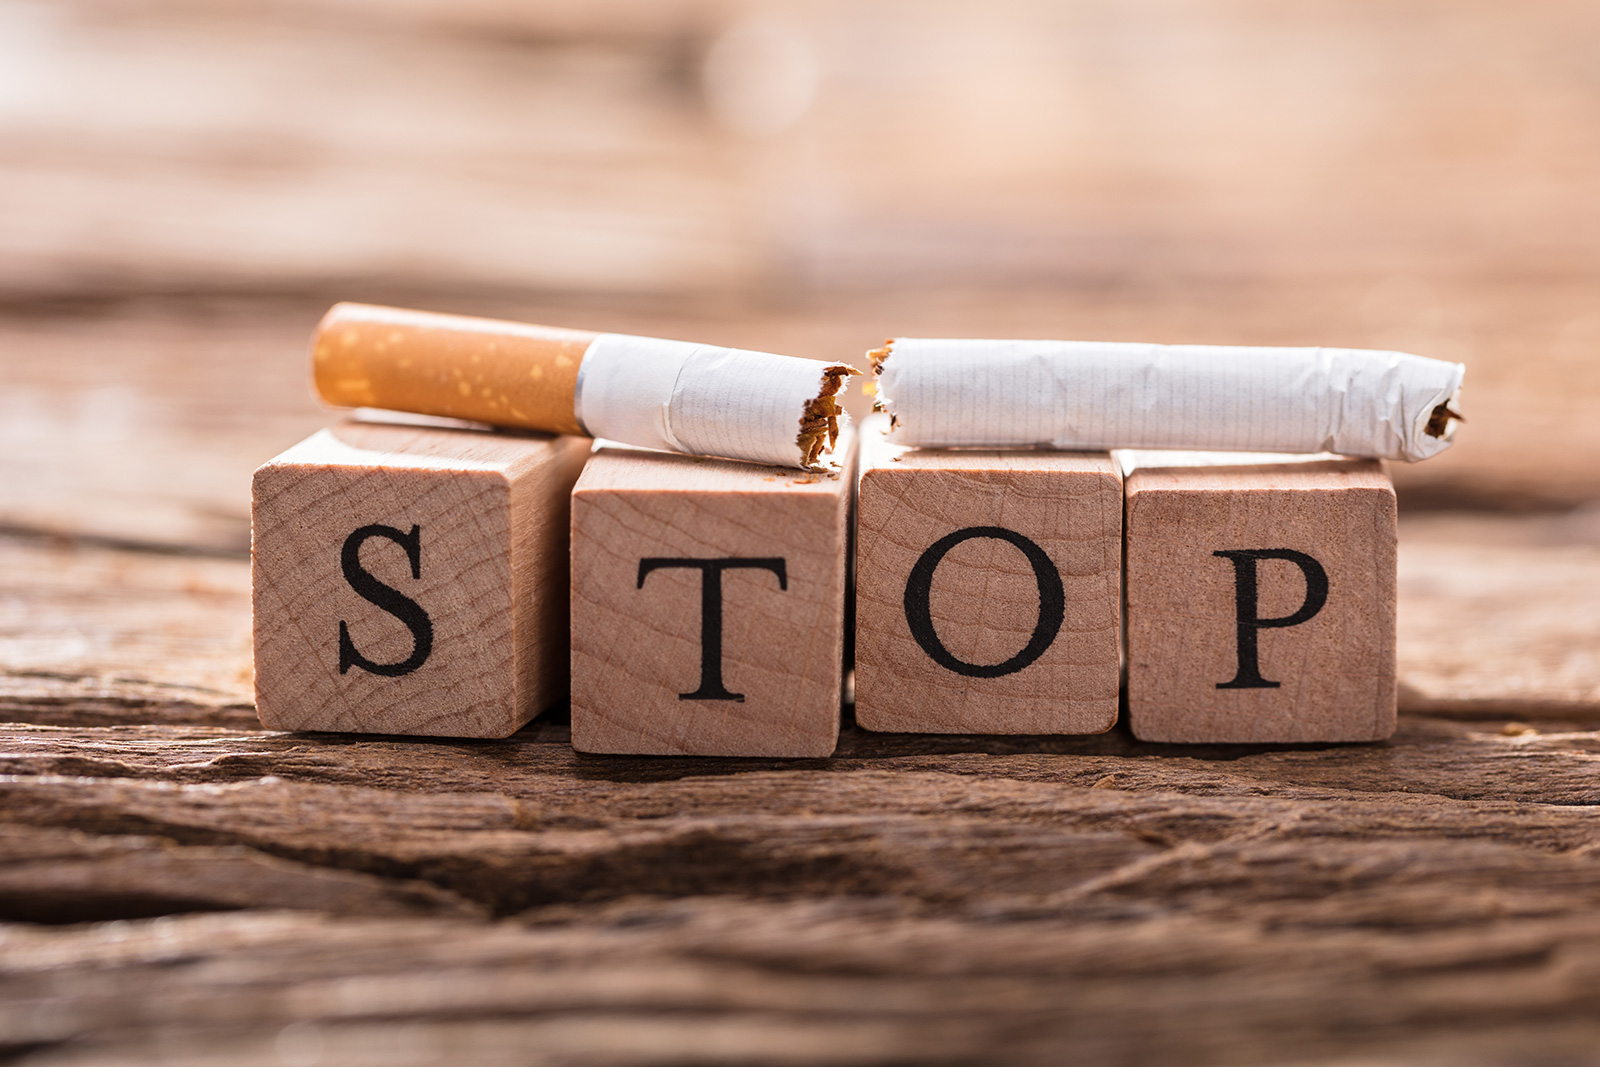 Durchgebrochene Zigarette liegt auf Würfel mit dem Schriftzug "Stop"